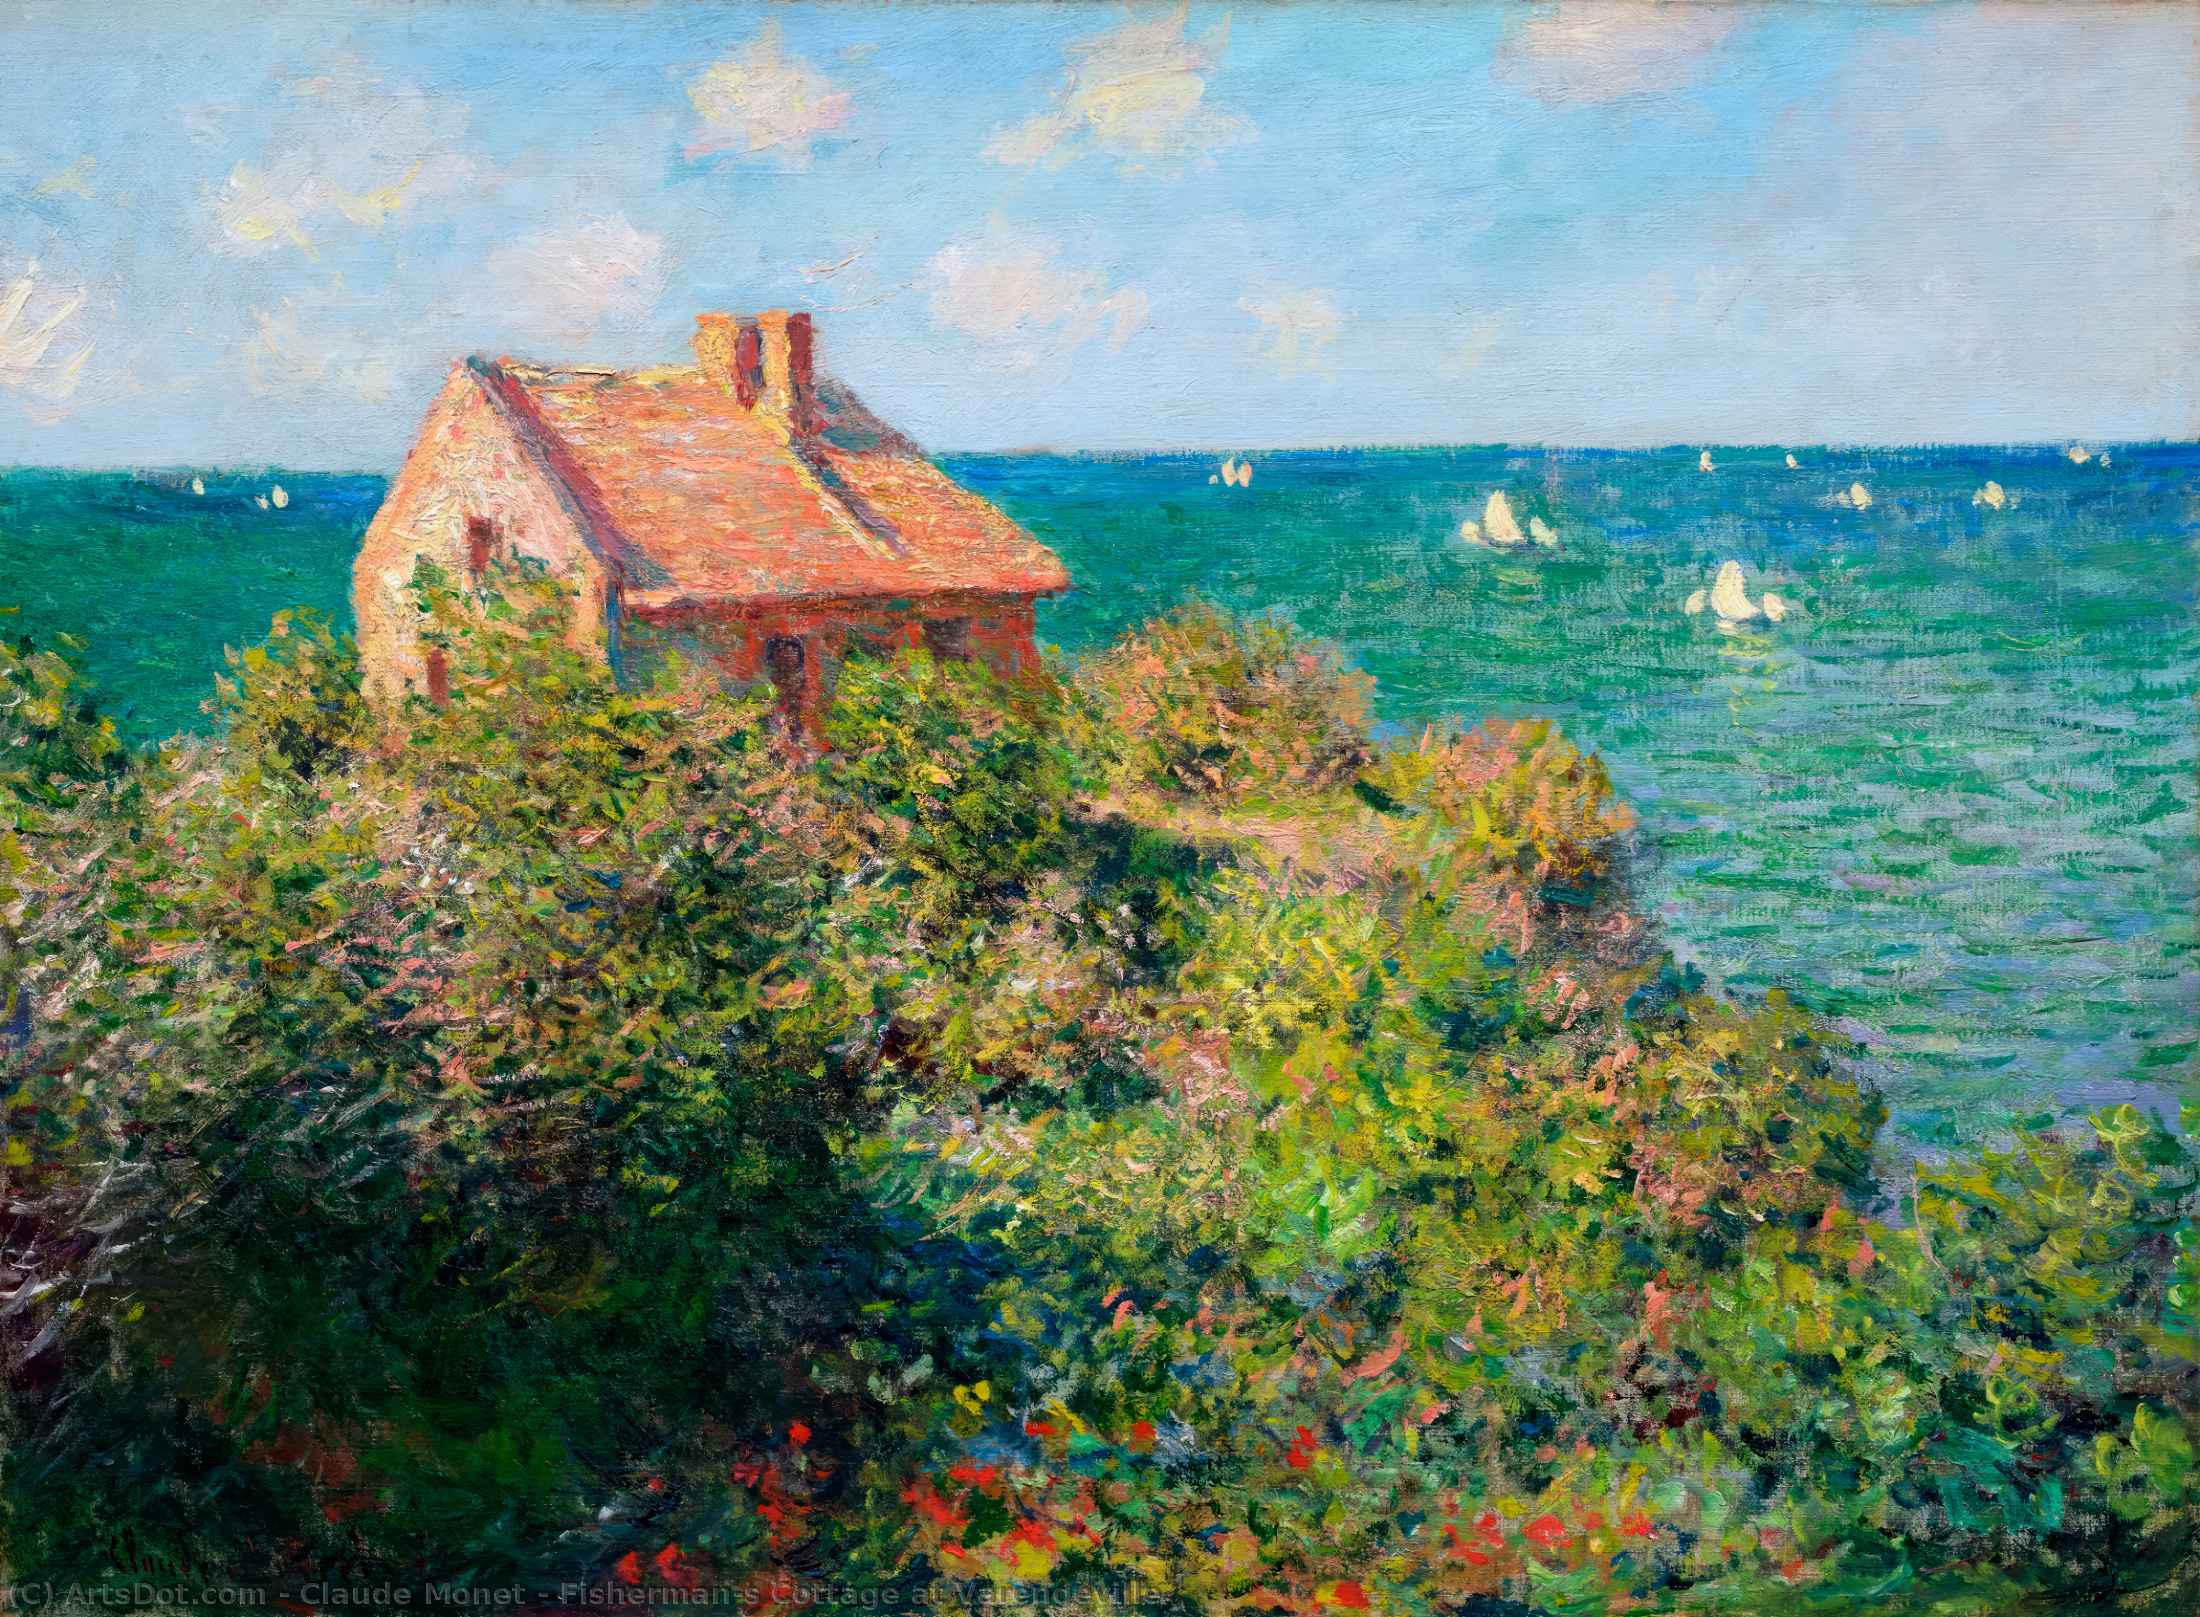 WikiOO.org – 美術百科全書 - 繪畫，作品 Claude Monet - Fisherman's 瓦伦格维尔小屋